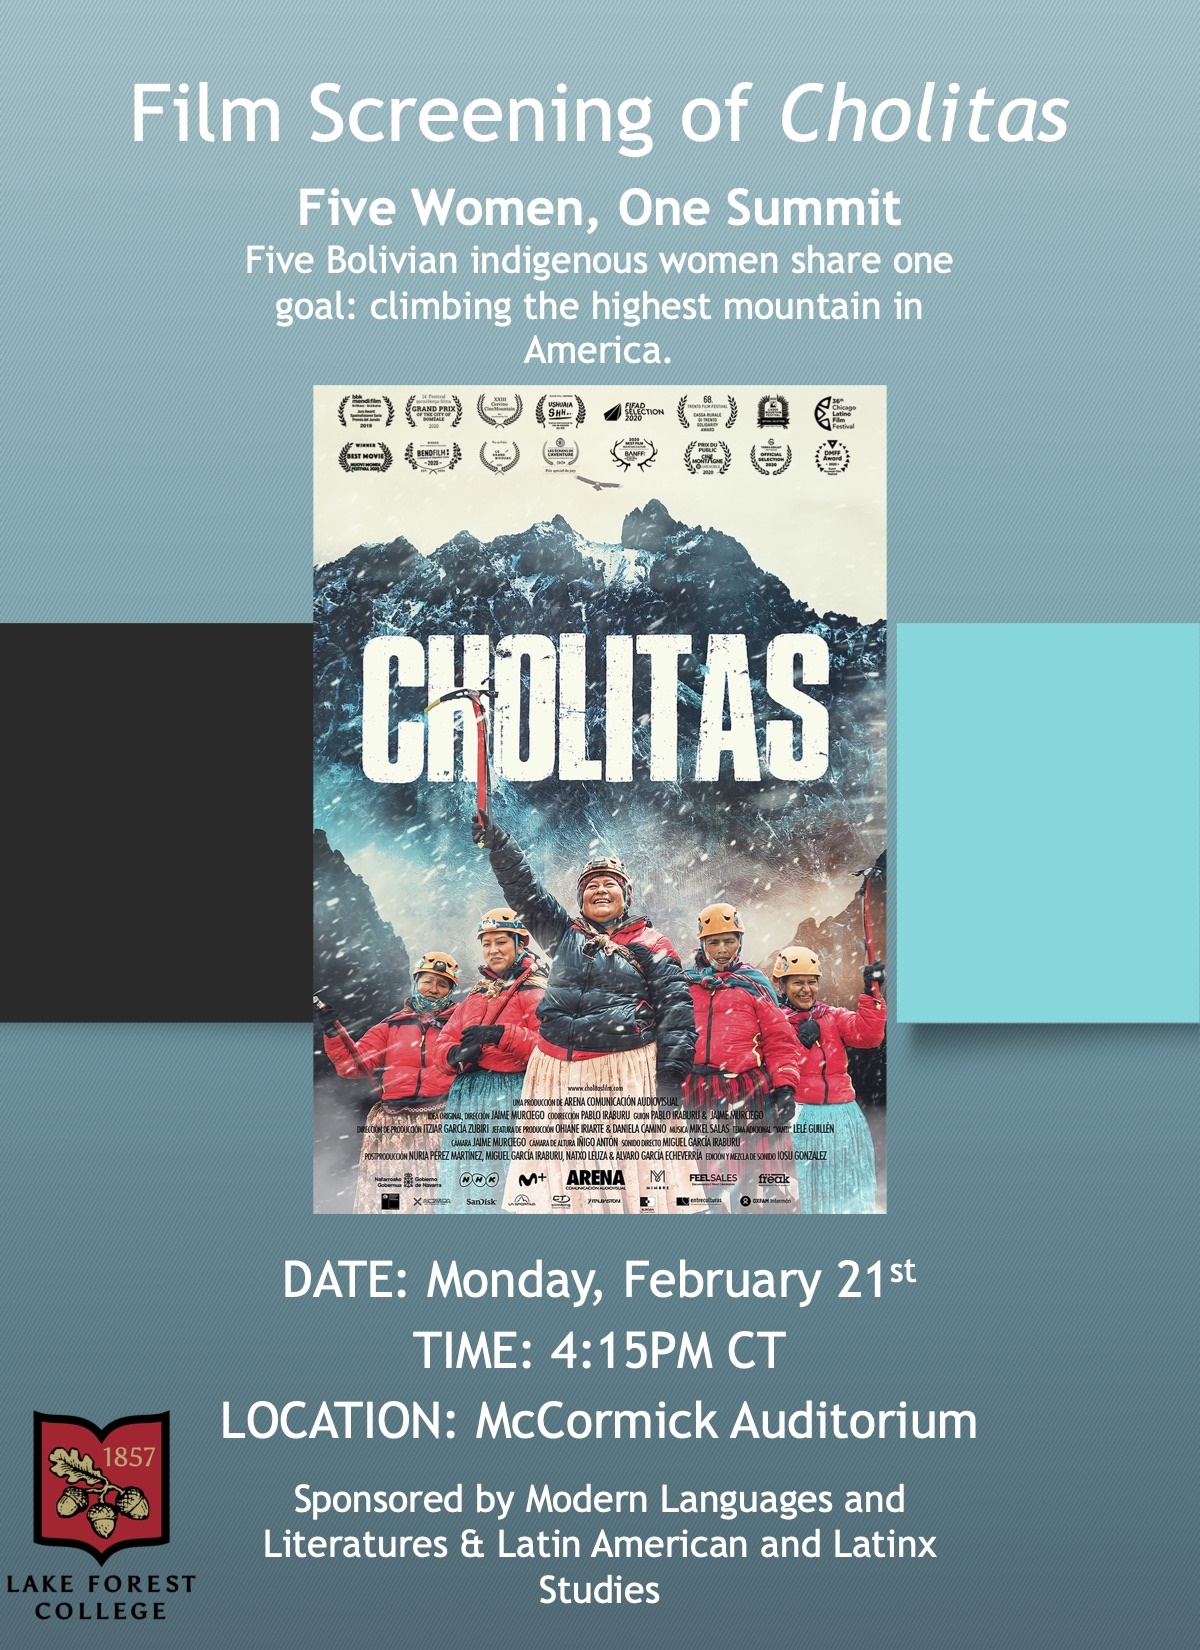 Film Screening of Cholitas poster